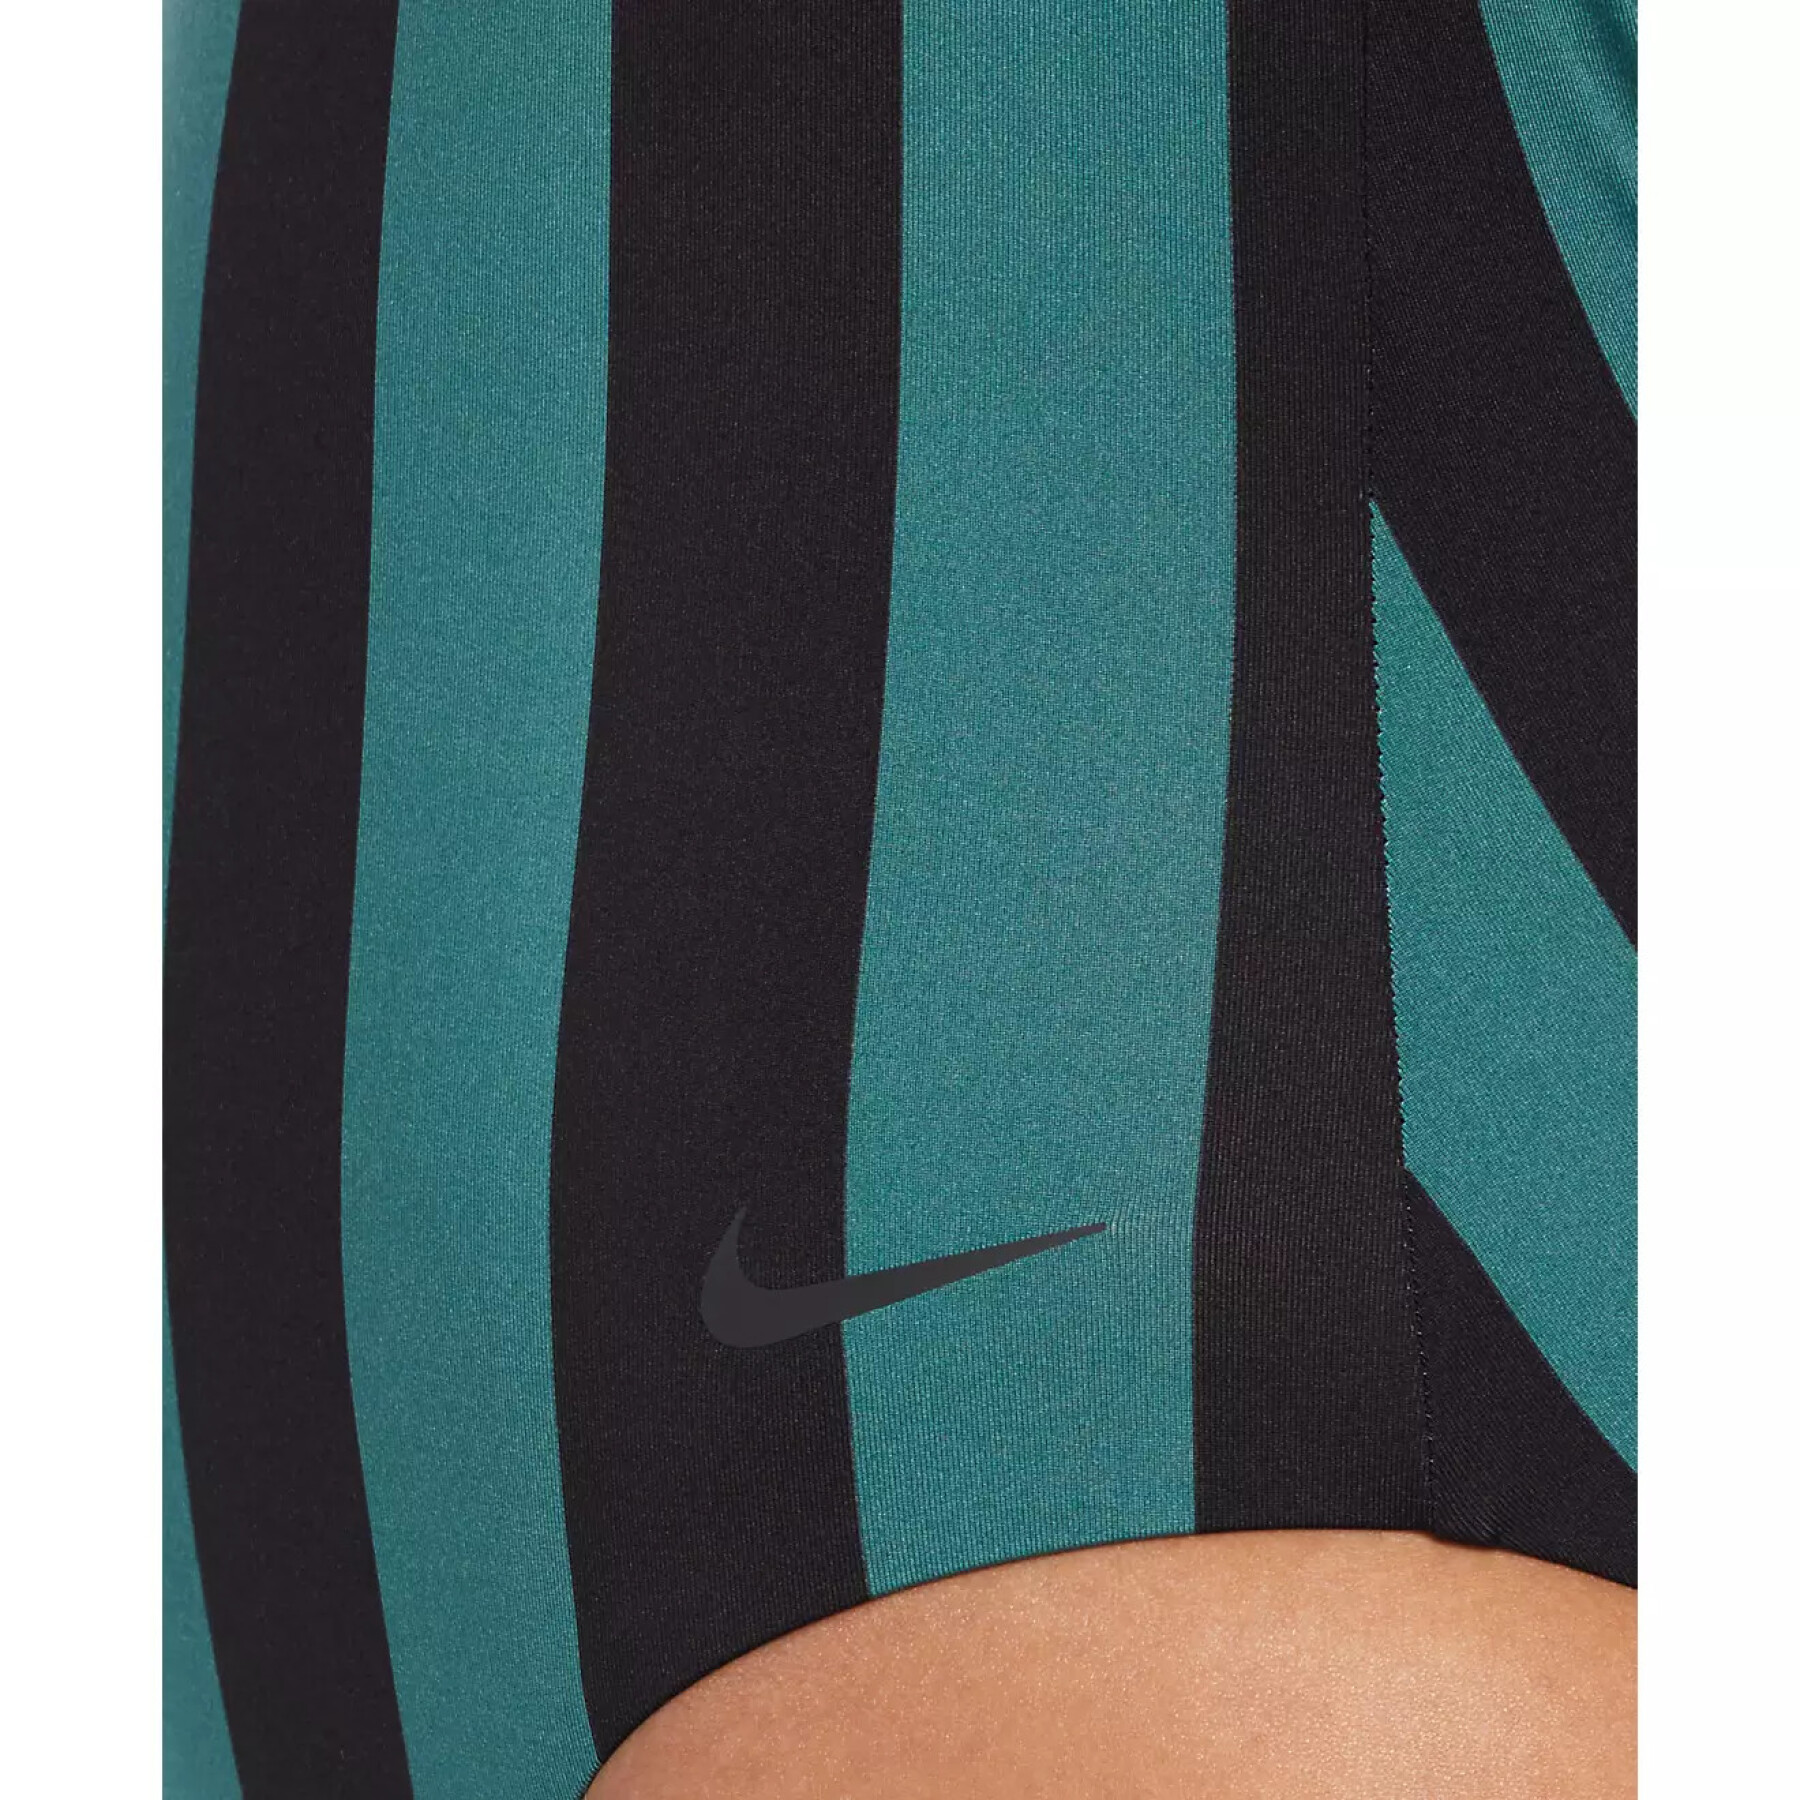 Badeanzug, Mädchen Nike Statement Stripe